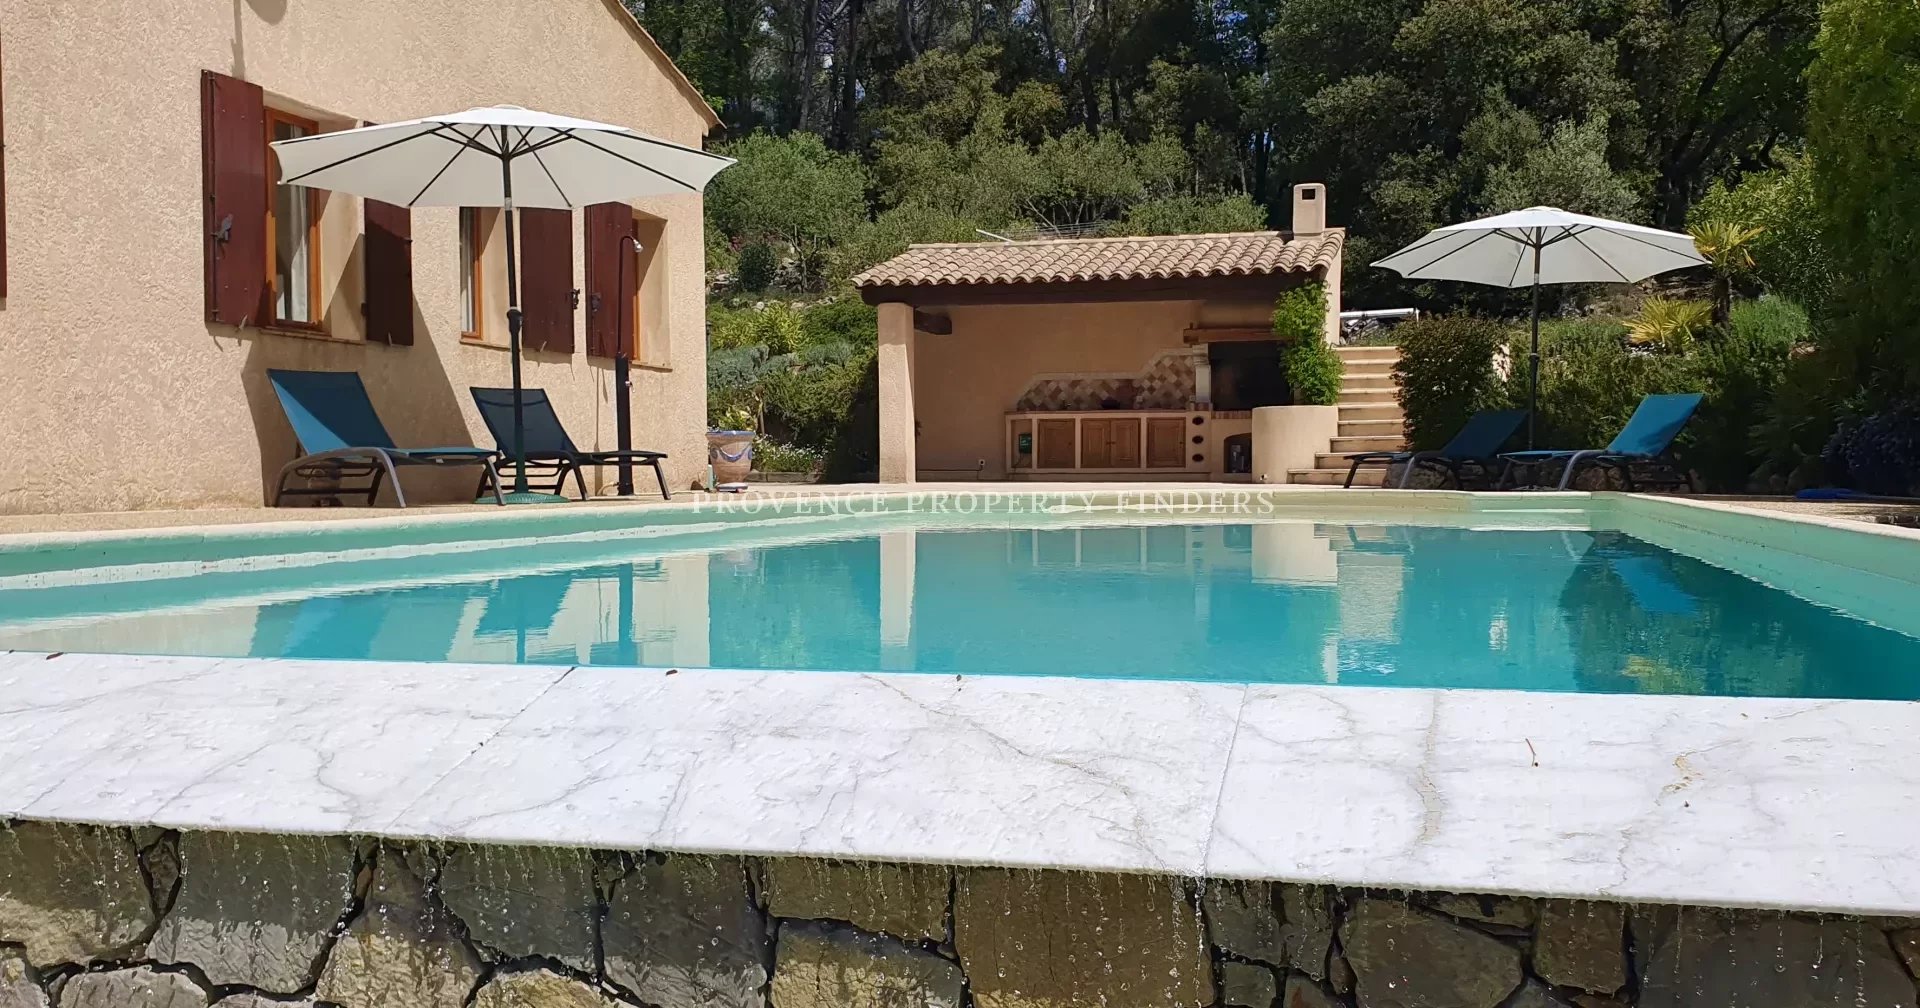 Mooie villa met mooi uitzicht, 4 slaapkamers, (verwarmd) zwembad.